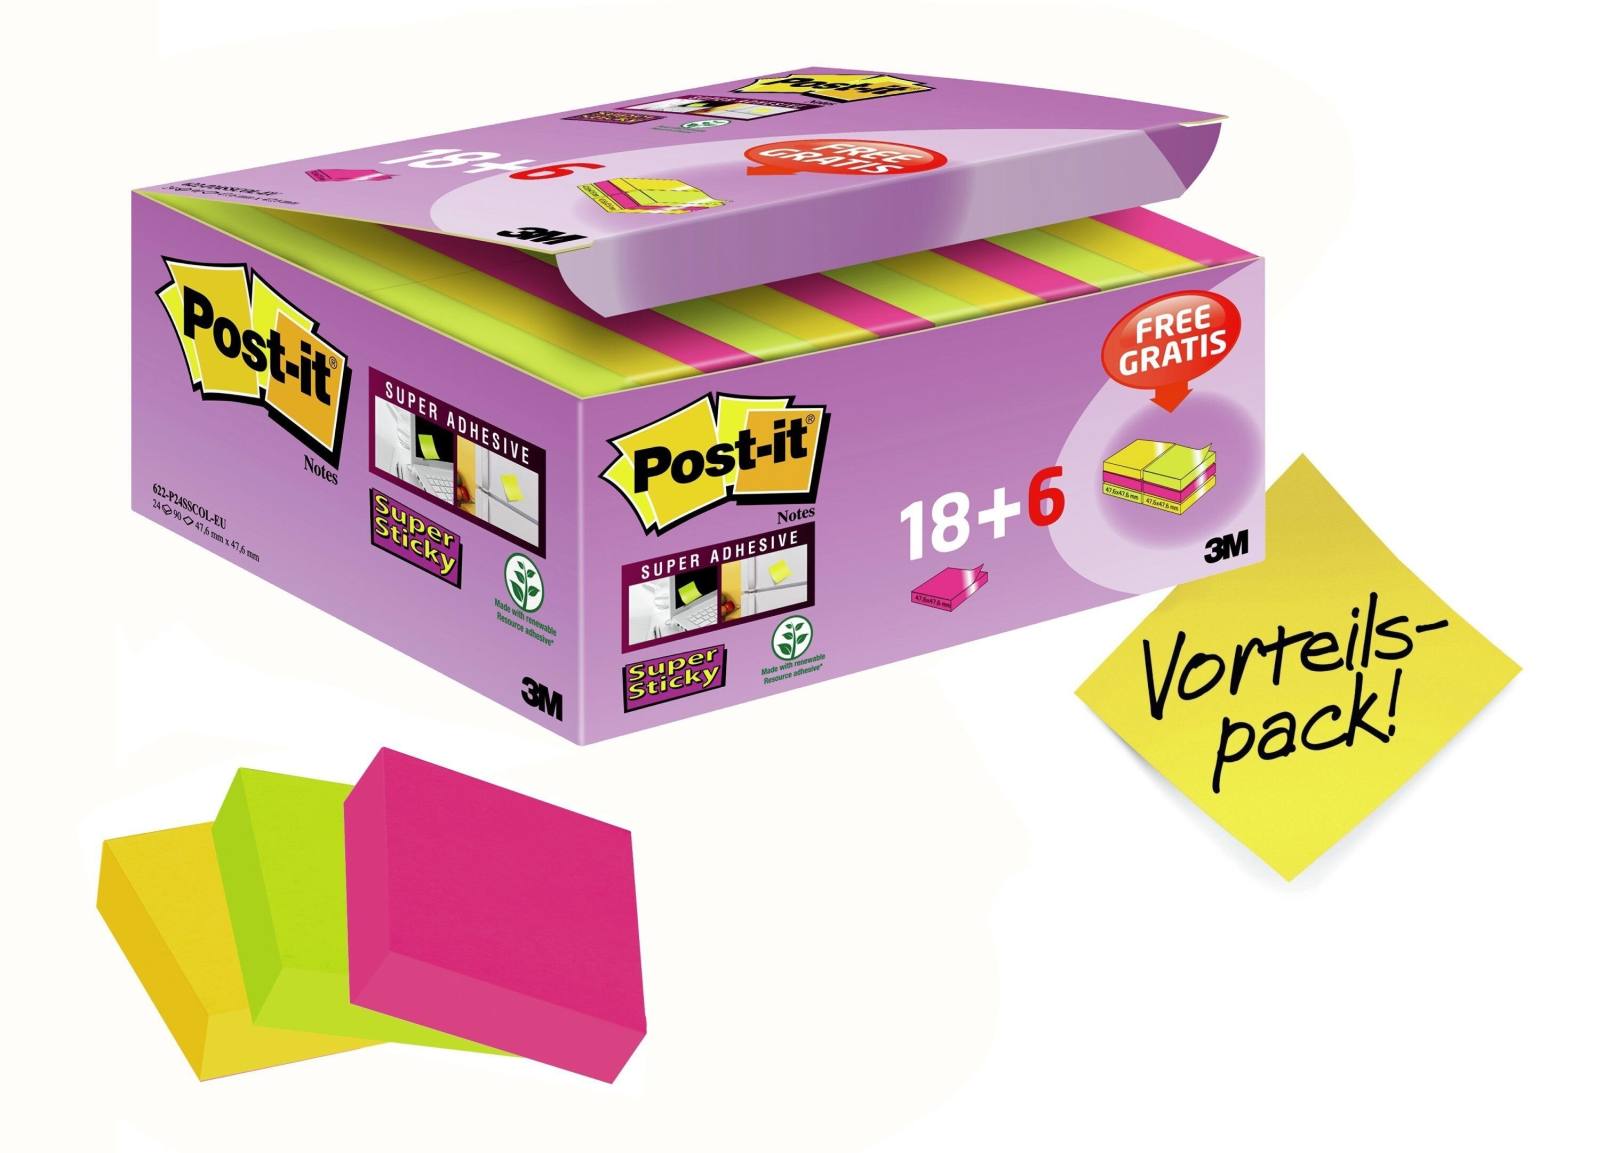 3M Post-it Super Sticky Notes Promotion 622P24SC, 24 kpl 90 arkin lehtiä laatikossa erikoishintaan, erittäin vaaleanpunainen, keltainen, neonvihreä, 48 mm x 48 mm, ei erikseen sellofaanattu, PEFC-sertifioitu